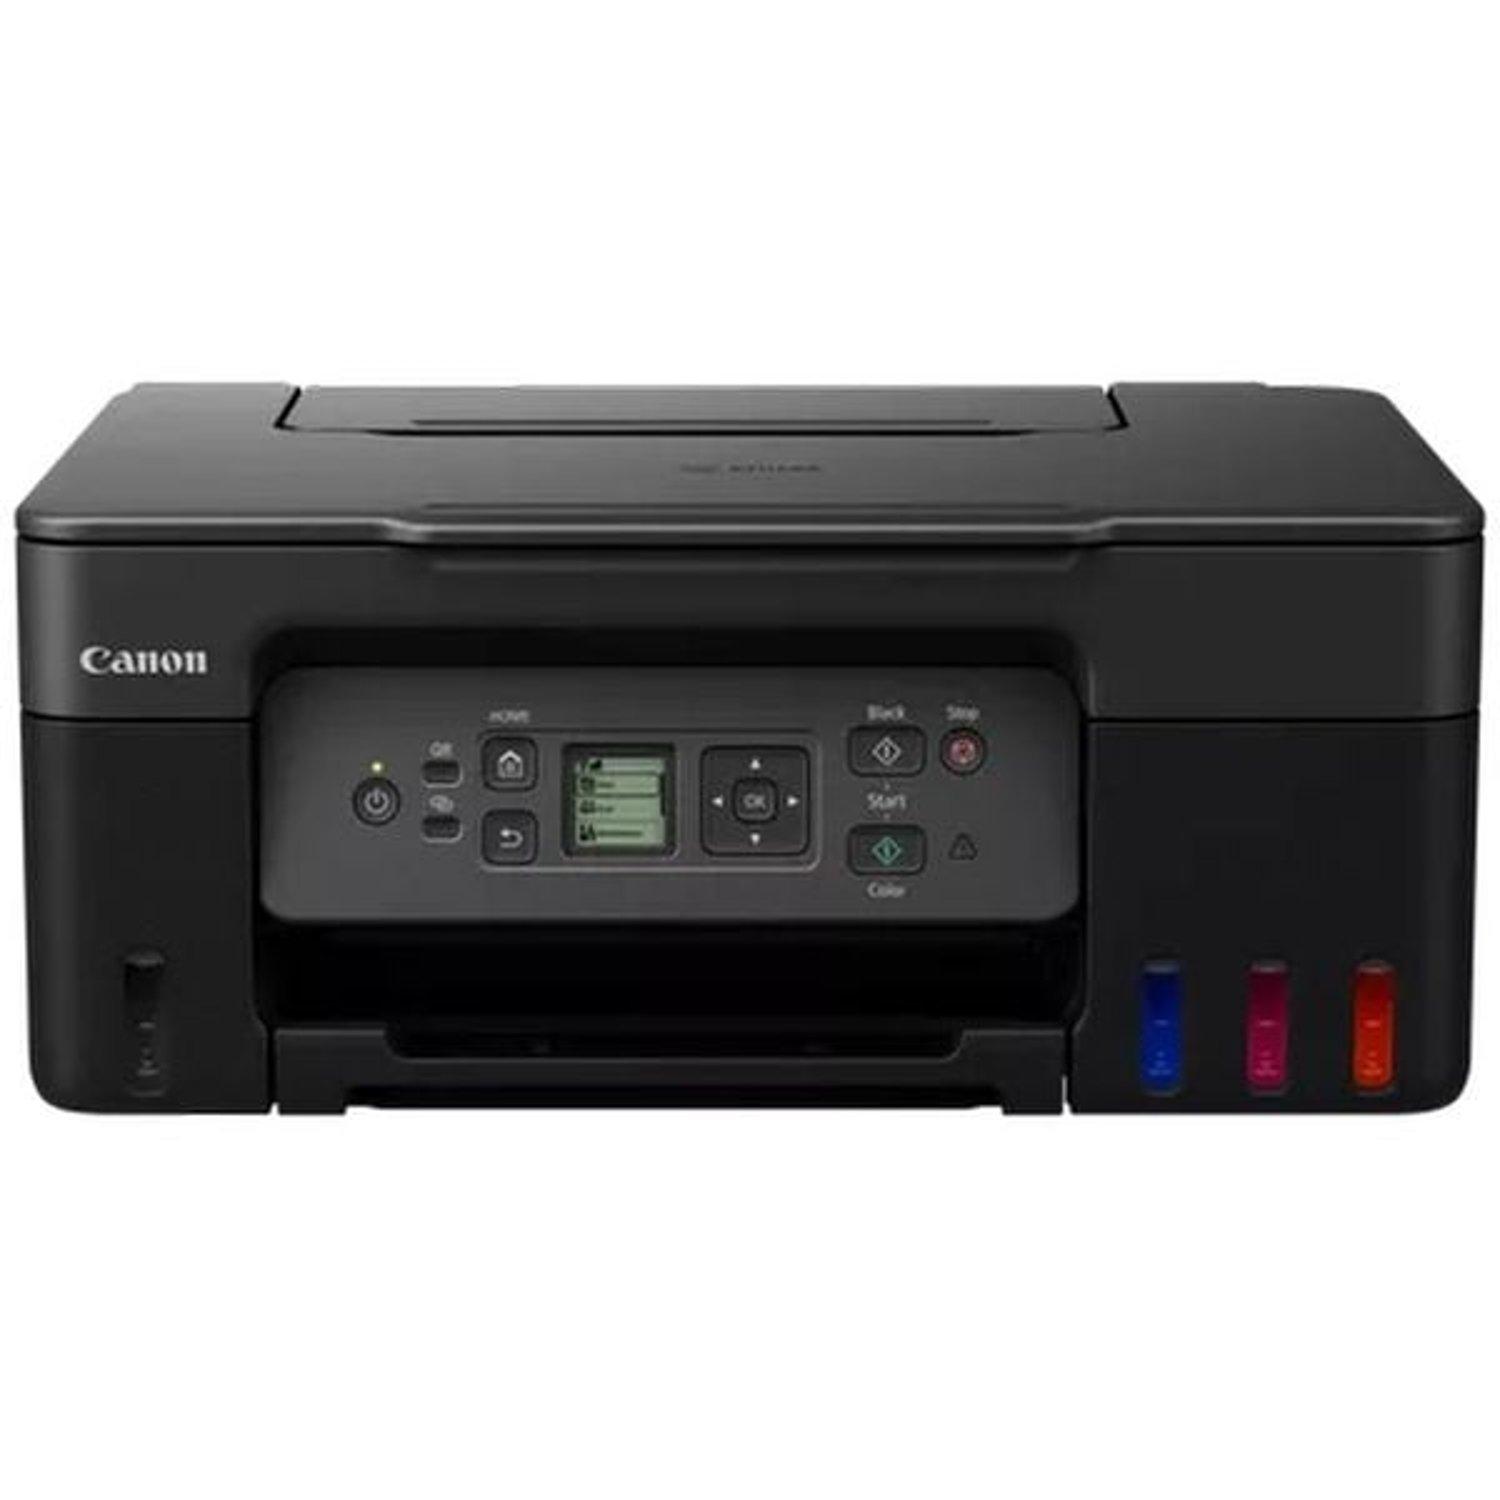 Canon i SENSYS MF655Cdw impresora multifunción láser color WiFi (3